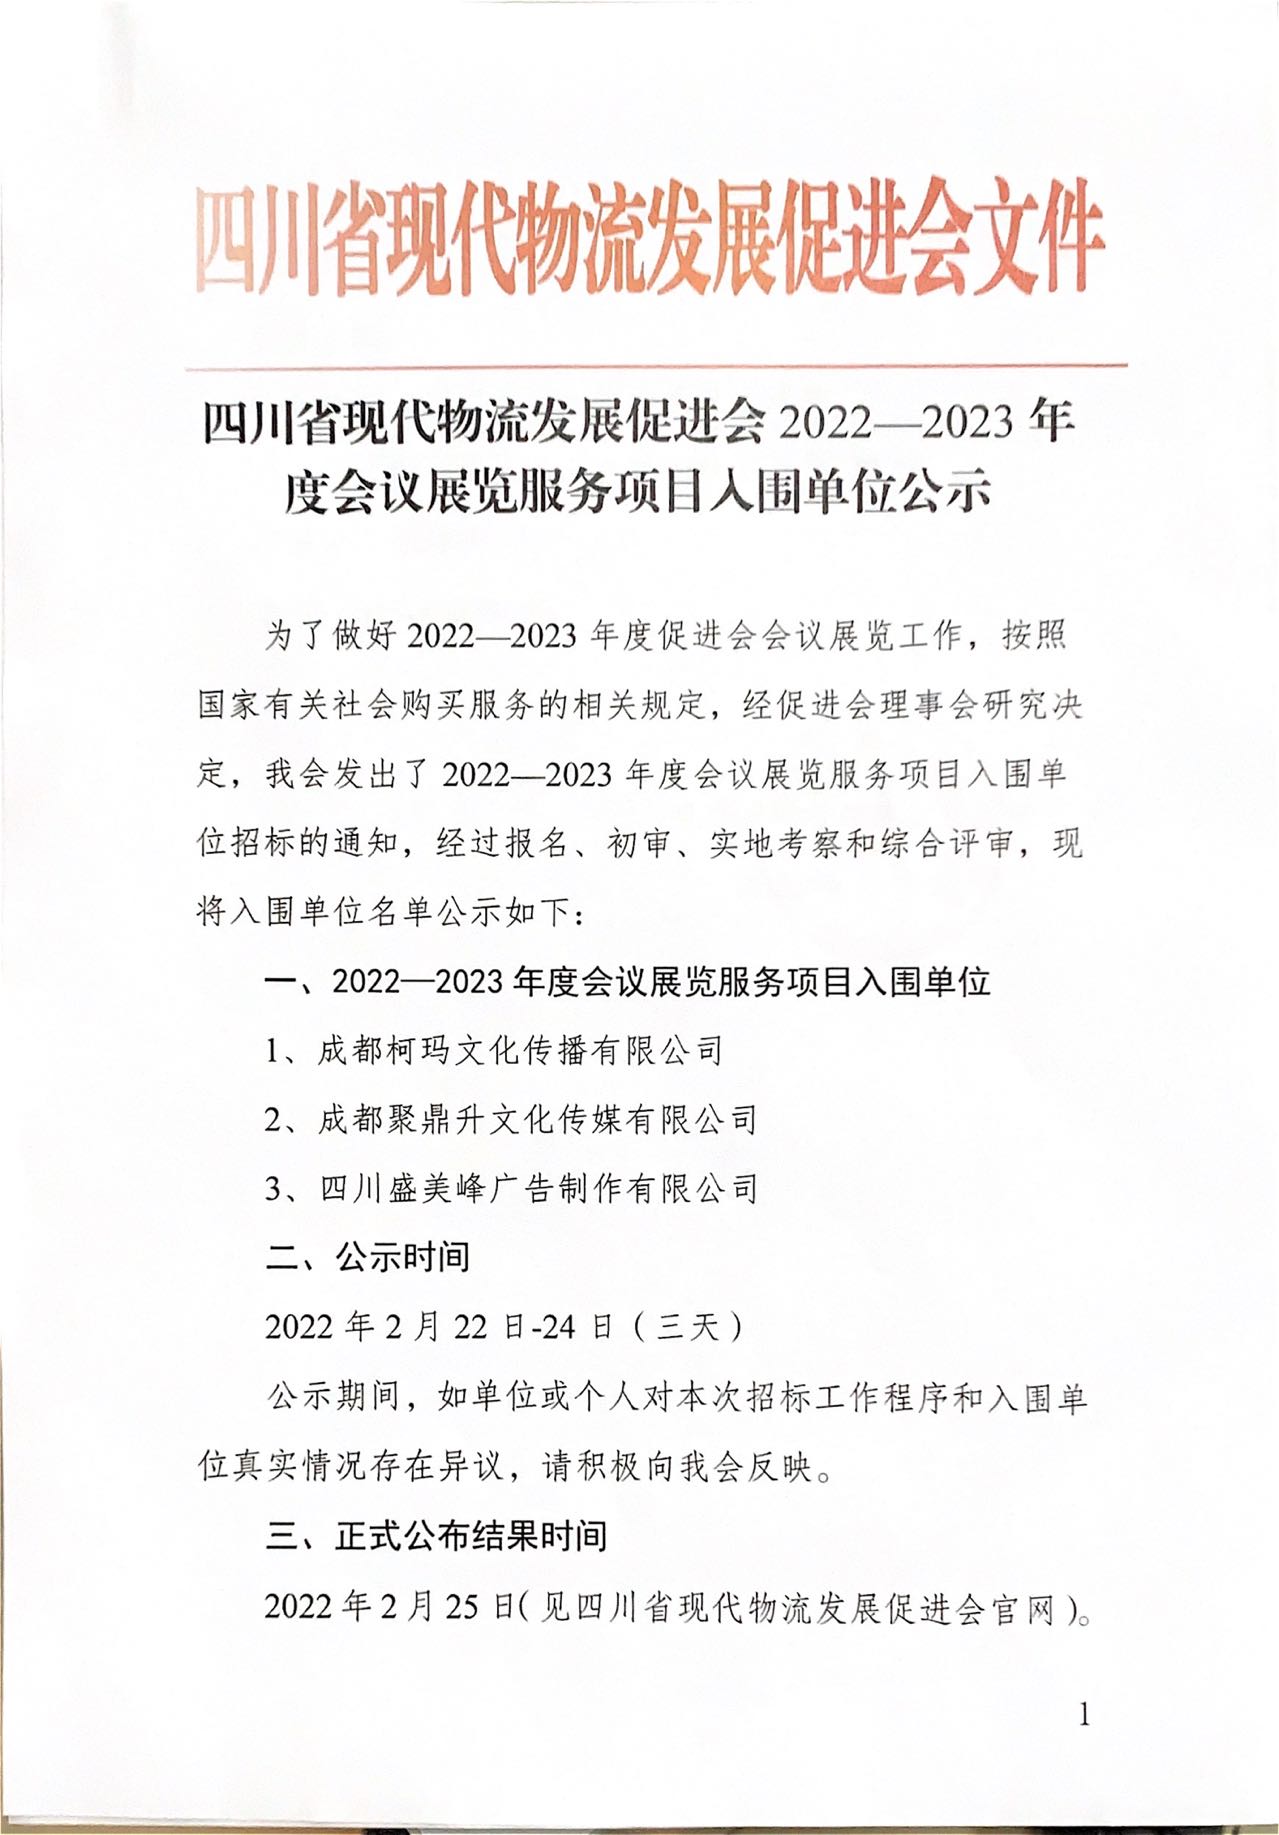 四川省现代物流发展促进会2022-2023 年度会议展览服务项目入围单位公示